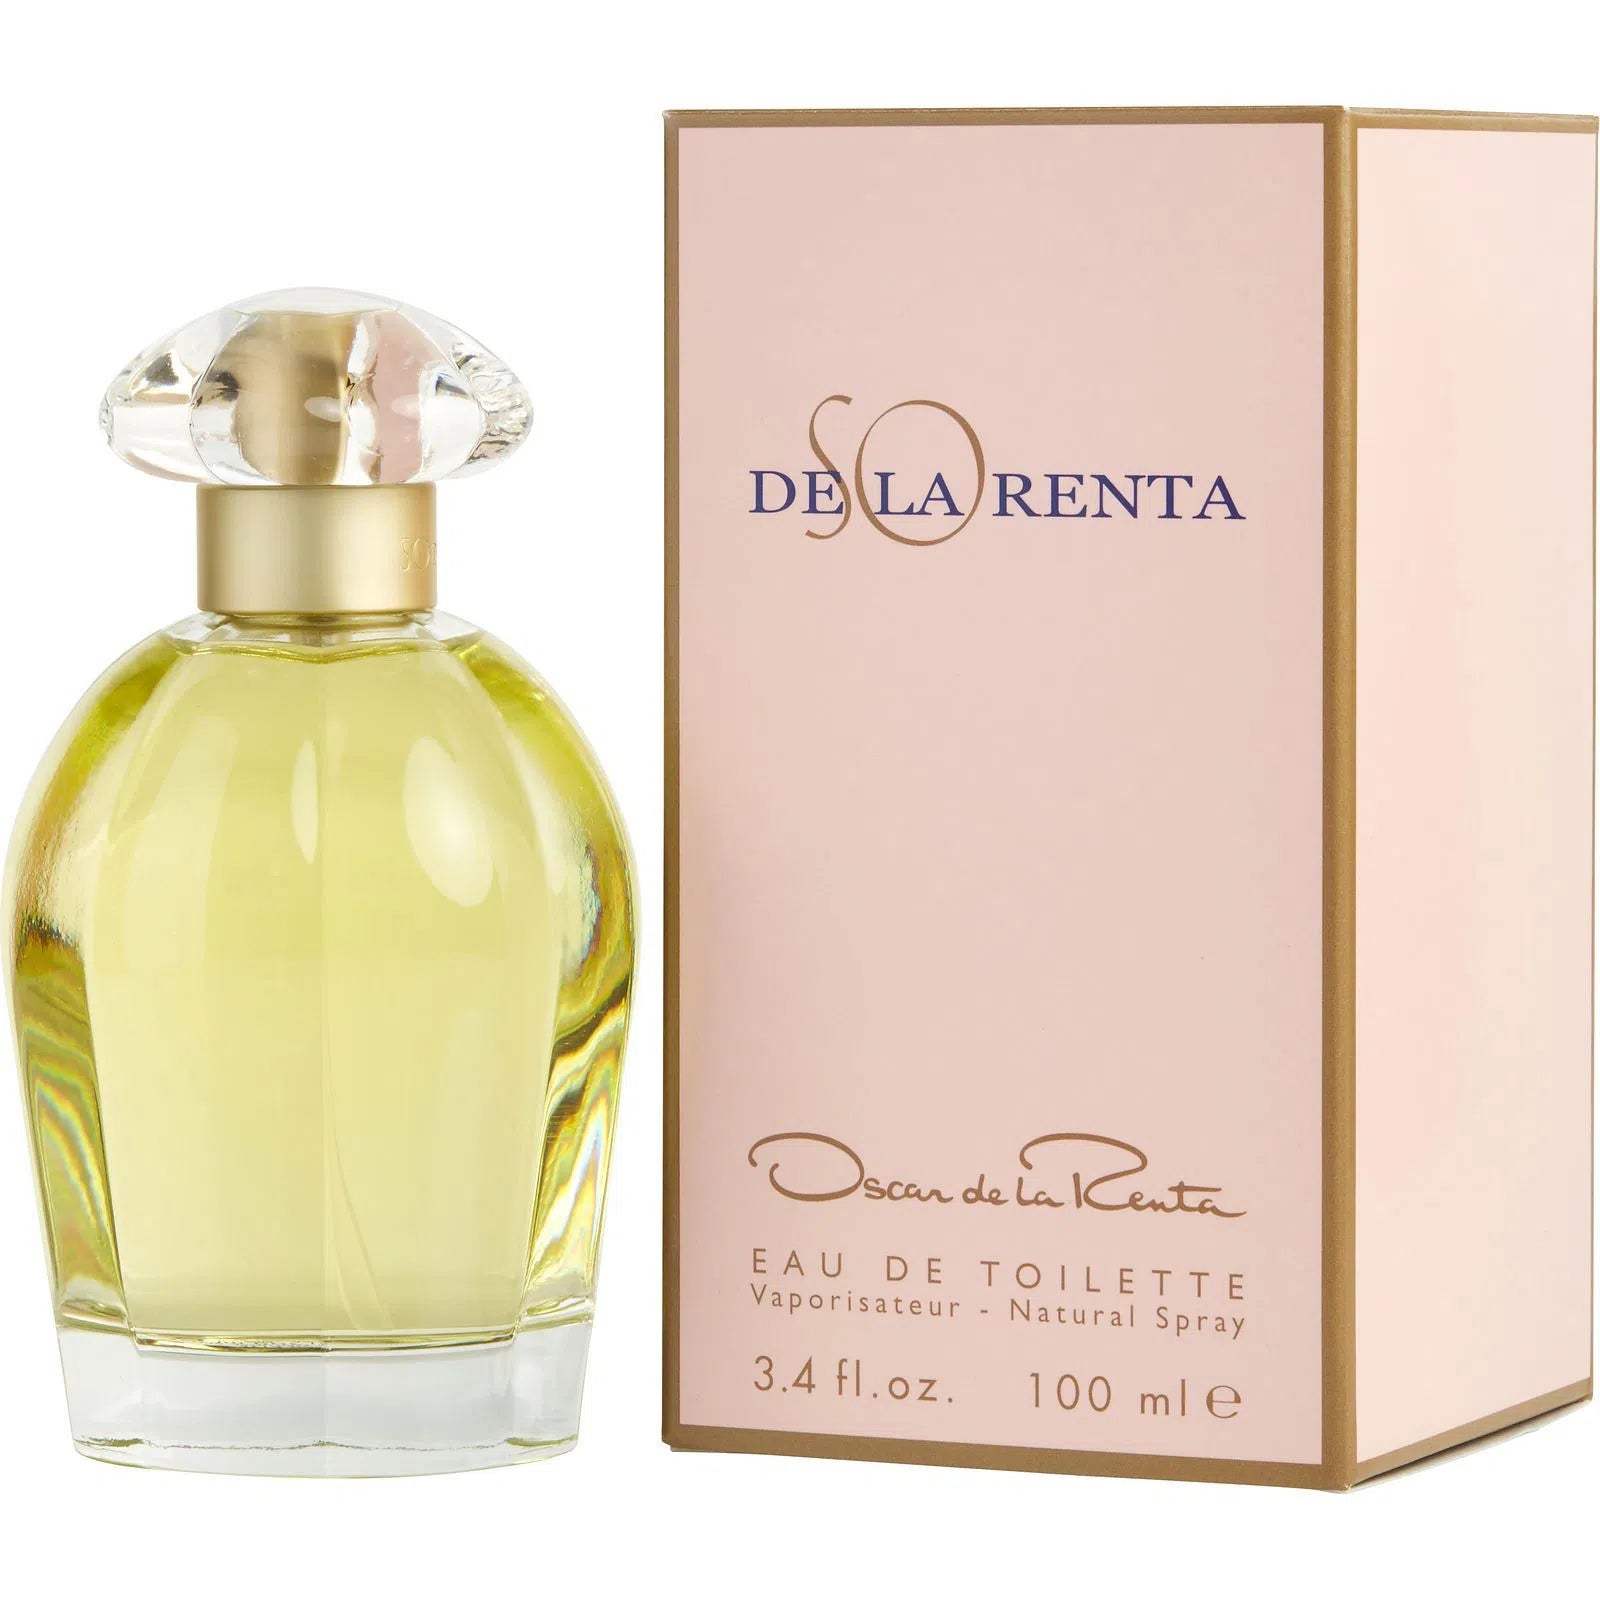 Perfume Oscar de la Renta So De La Renta EDT (W) / 100 ml - 085715587169- Prive Perfumes Honduras